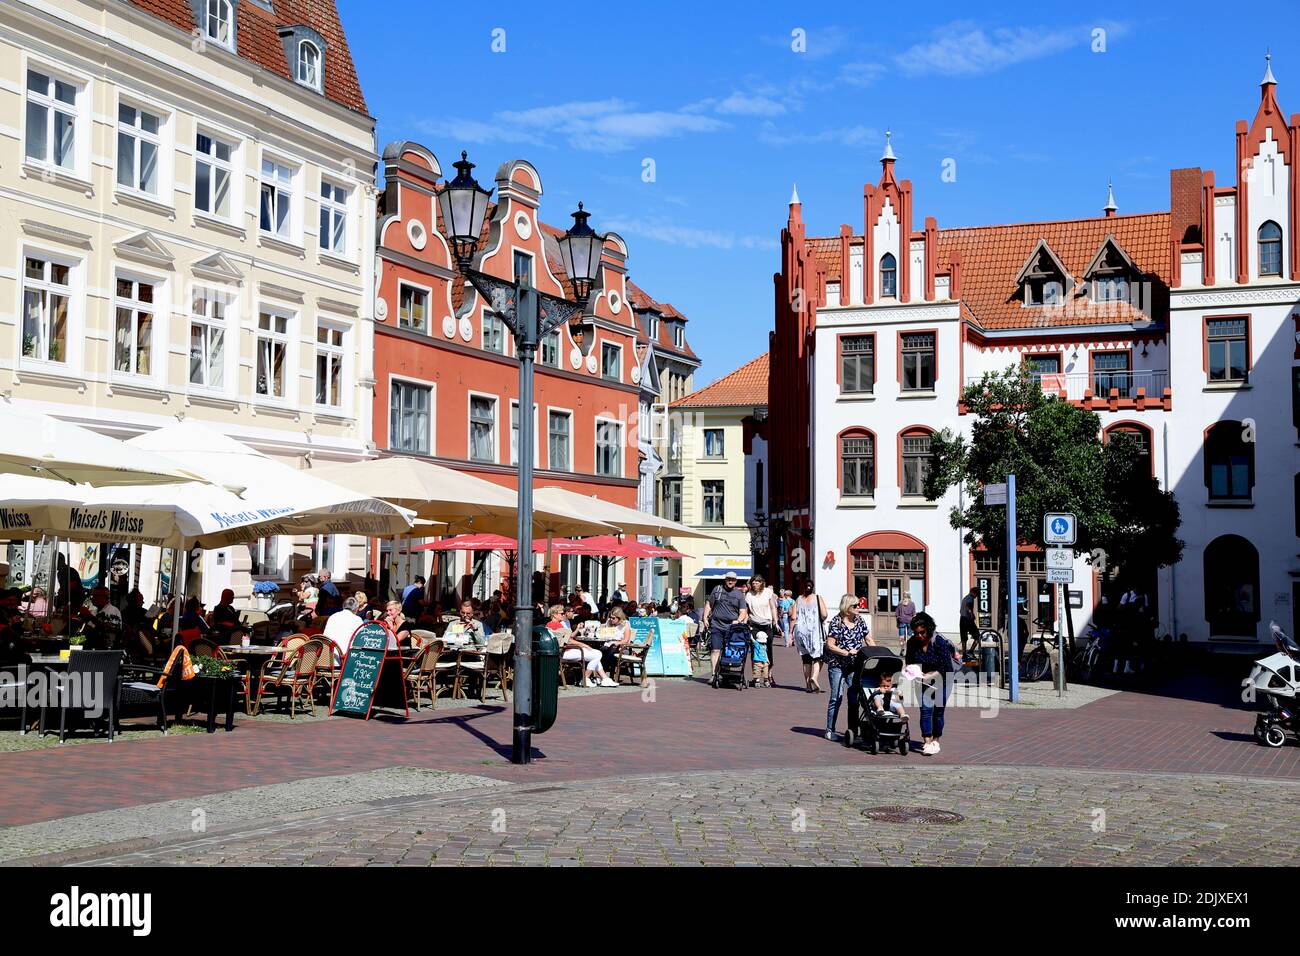 Alemania, Mar Báltico, Mecklemburgo-Pomerania Occidental, Ciudad Hanseática de Wismar, am Markt Foto de stock